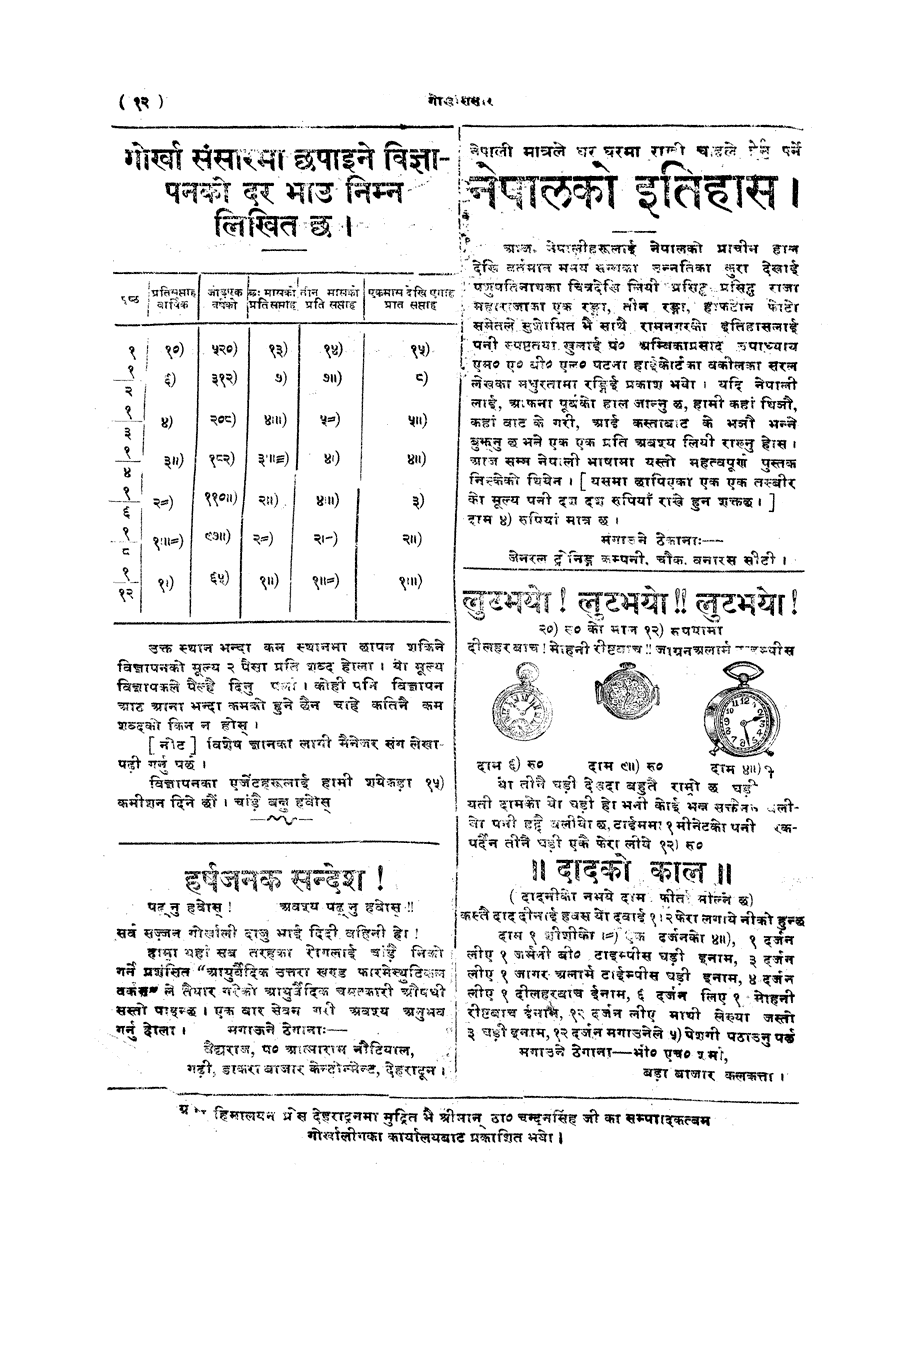 Gorkha Sansar, 17 Jan 1928, page 12